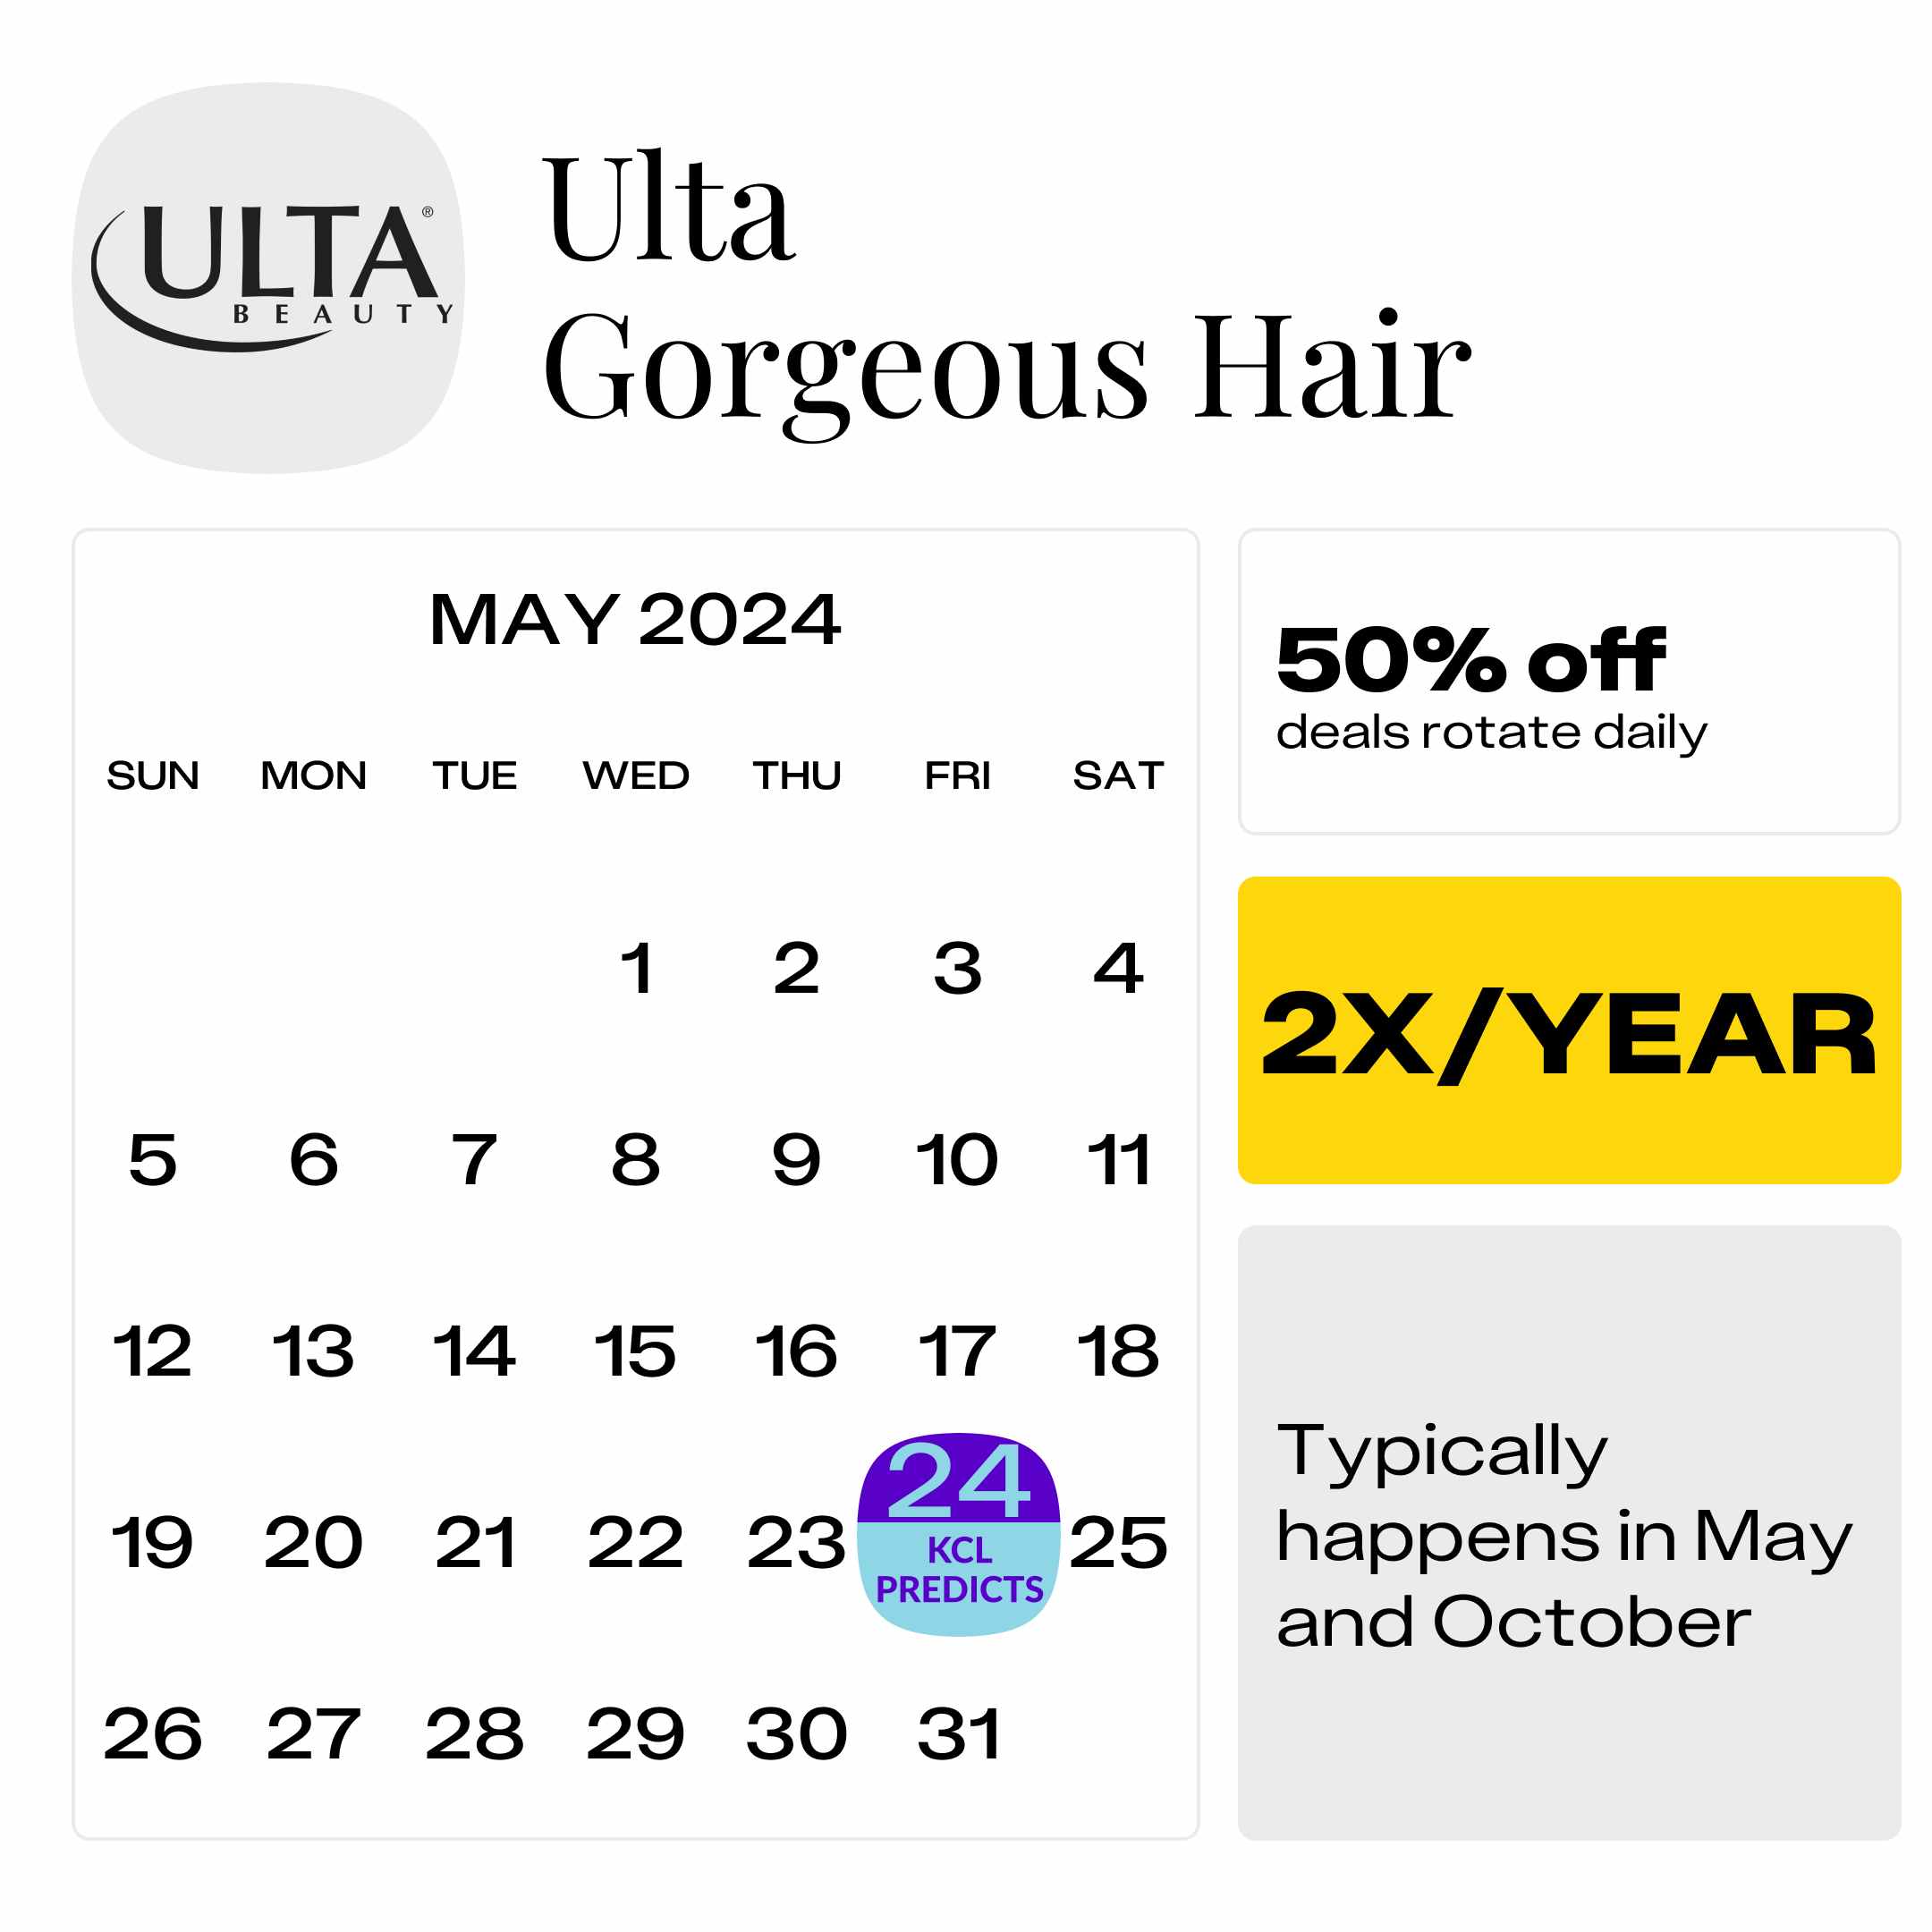 Ulta-Gorgeous-Hair (1)